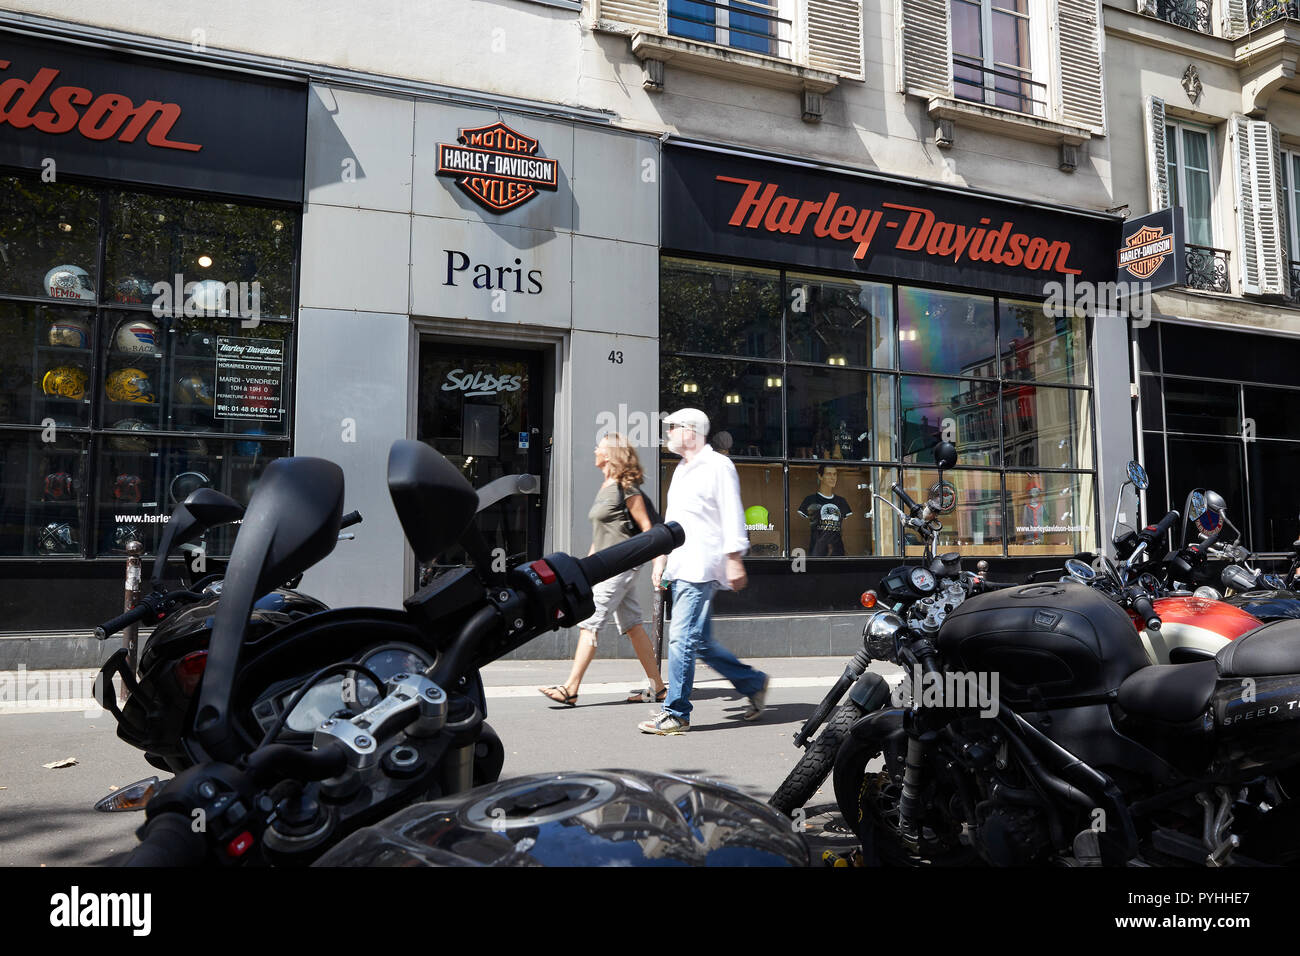 Paris, Ile-de-France, Frankreich - Die Harley-Davidson Paris-Bastille Zweig auf dem Boulevard Beaumarchais in der 3. Arrondissement. Stockfoto